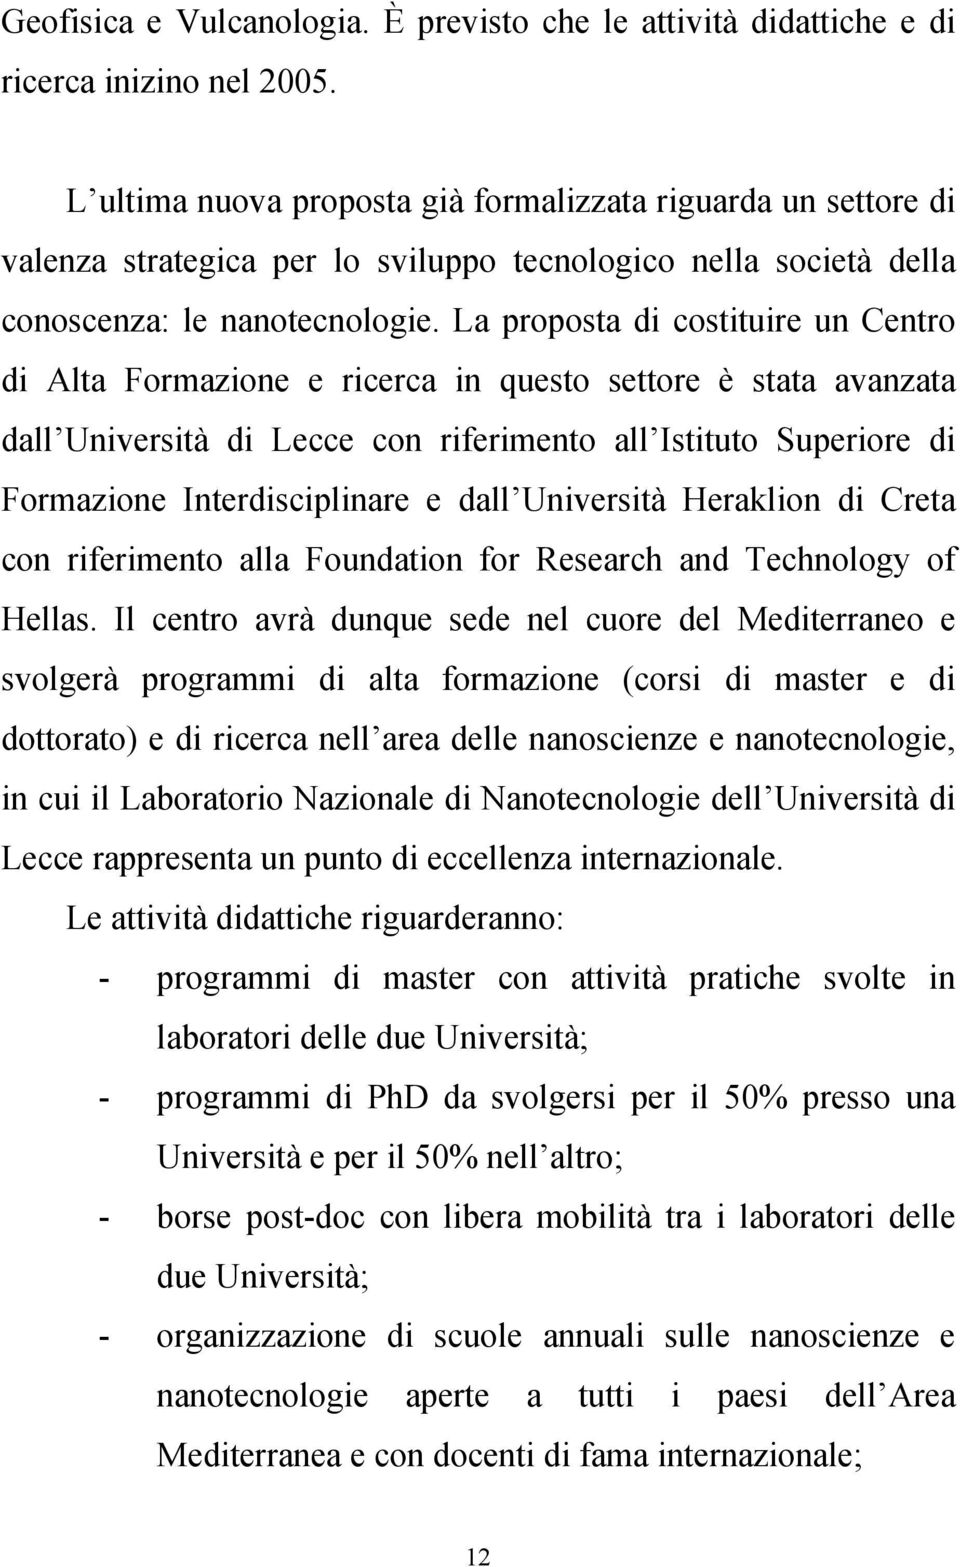 L propost di costituire un Centro di Alt Formzione e ricerc in questo settore è stt vnzt dll Università di Lecce con riferimento ll Istituto Superiore di Formzione Interdisciplinre e dll Università